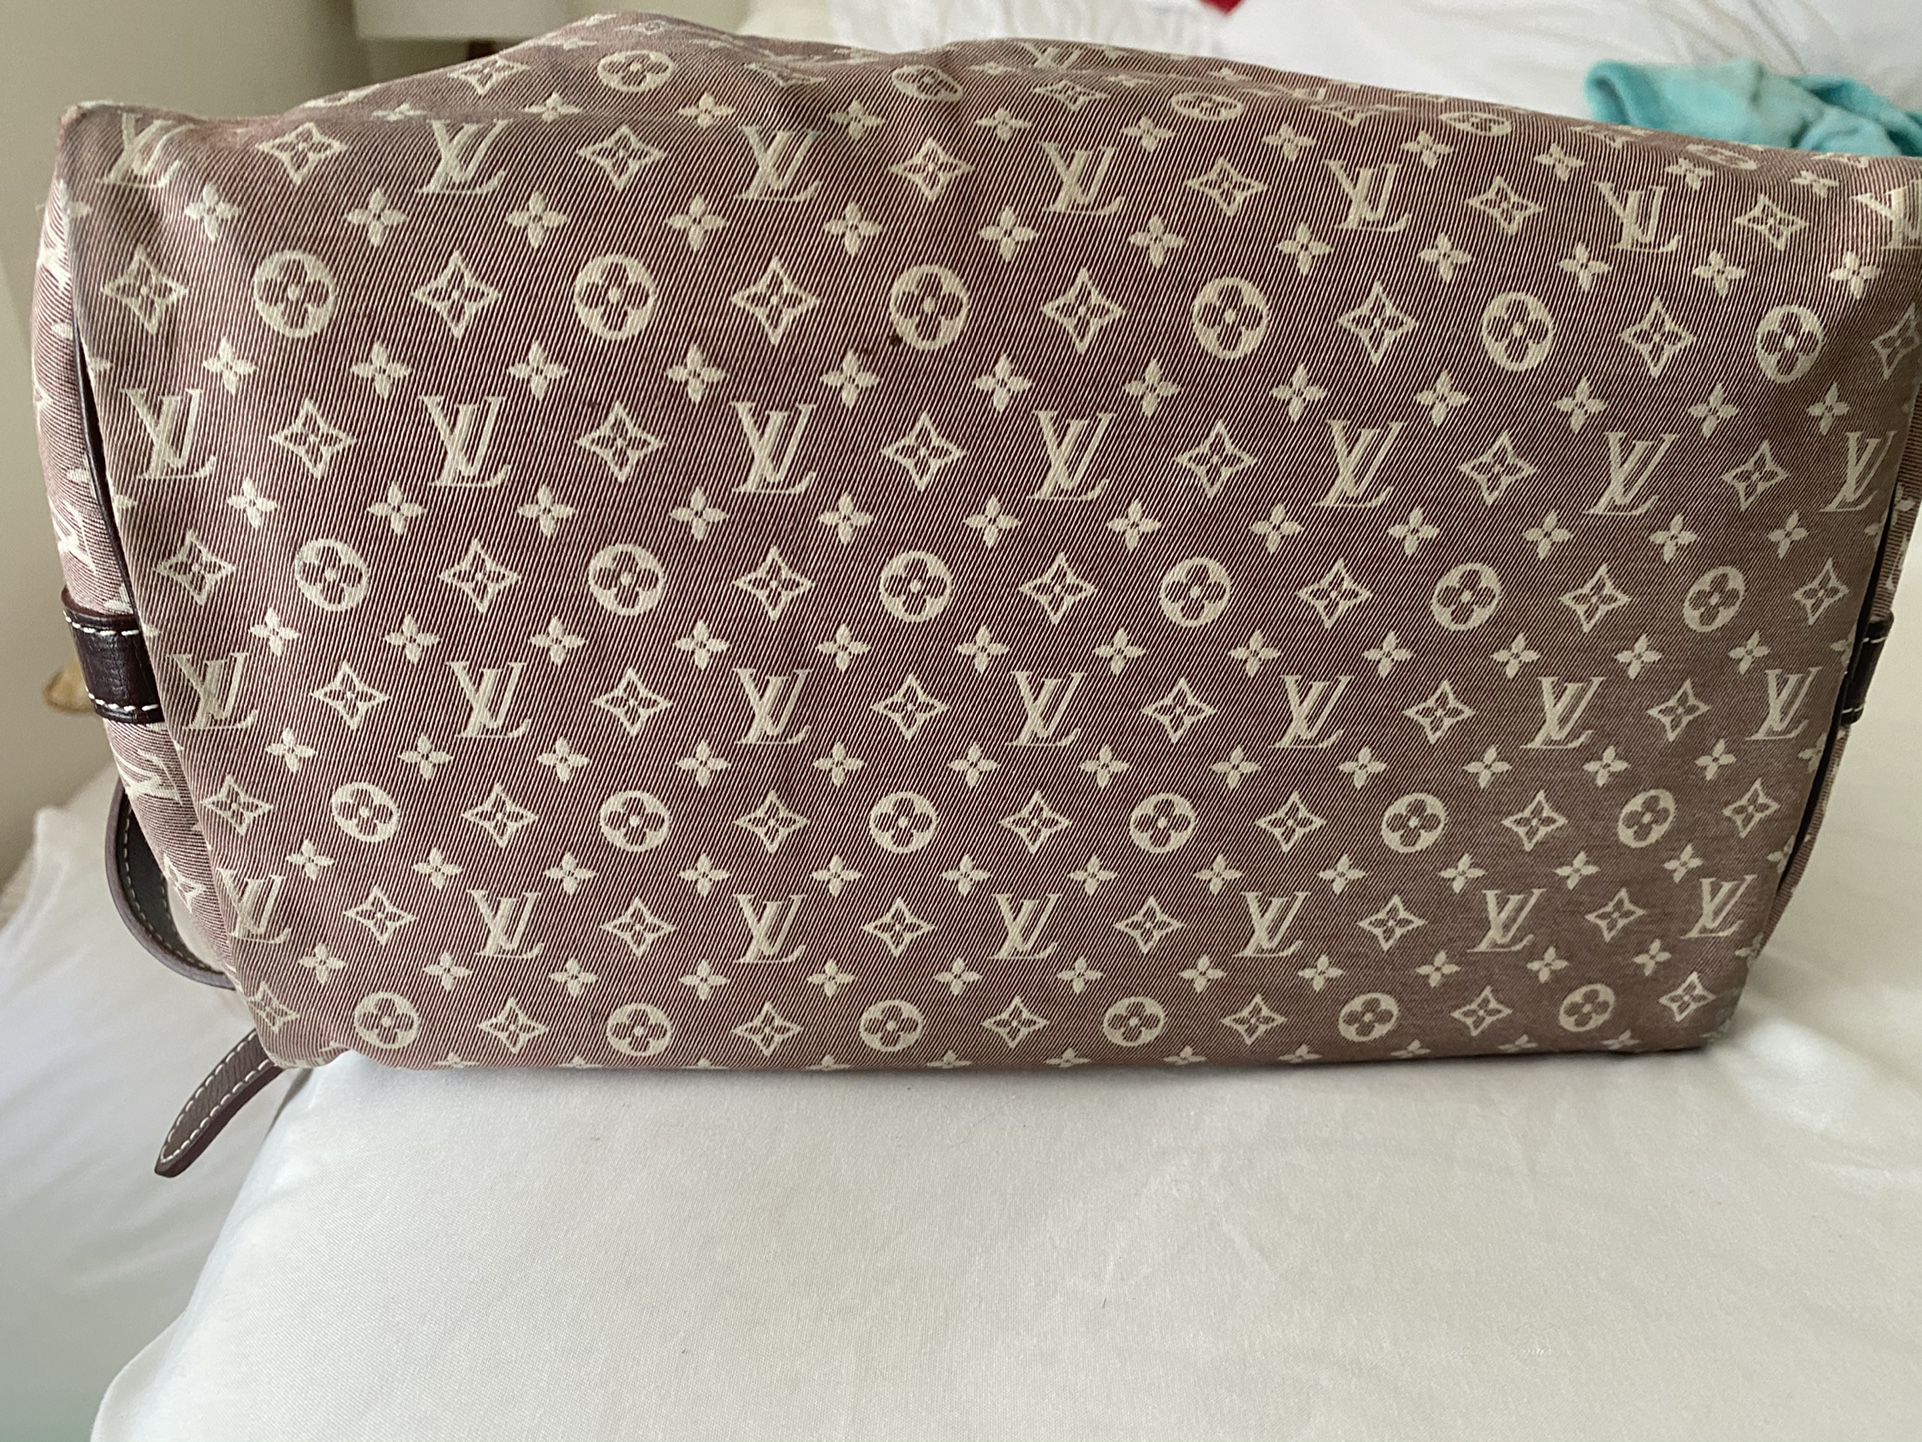 Authentic Louis Vuitton Travel Bag Set 